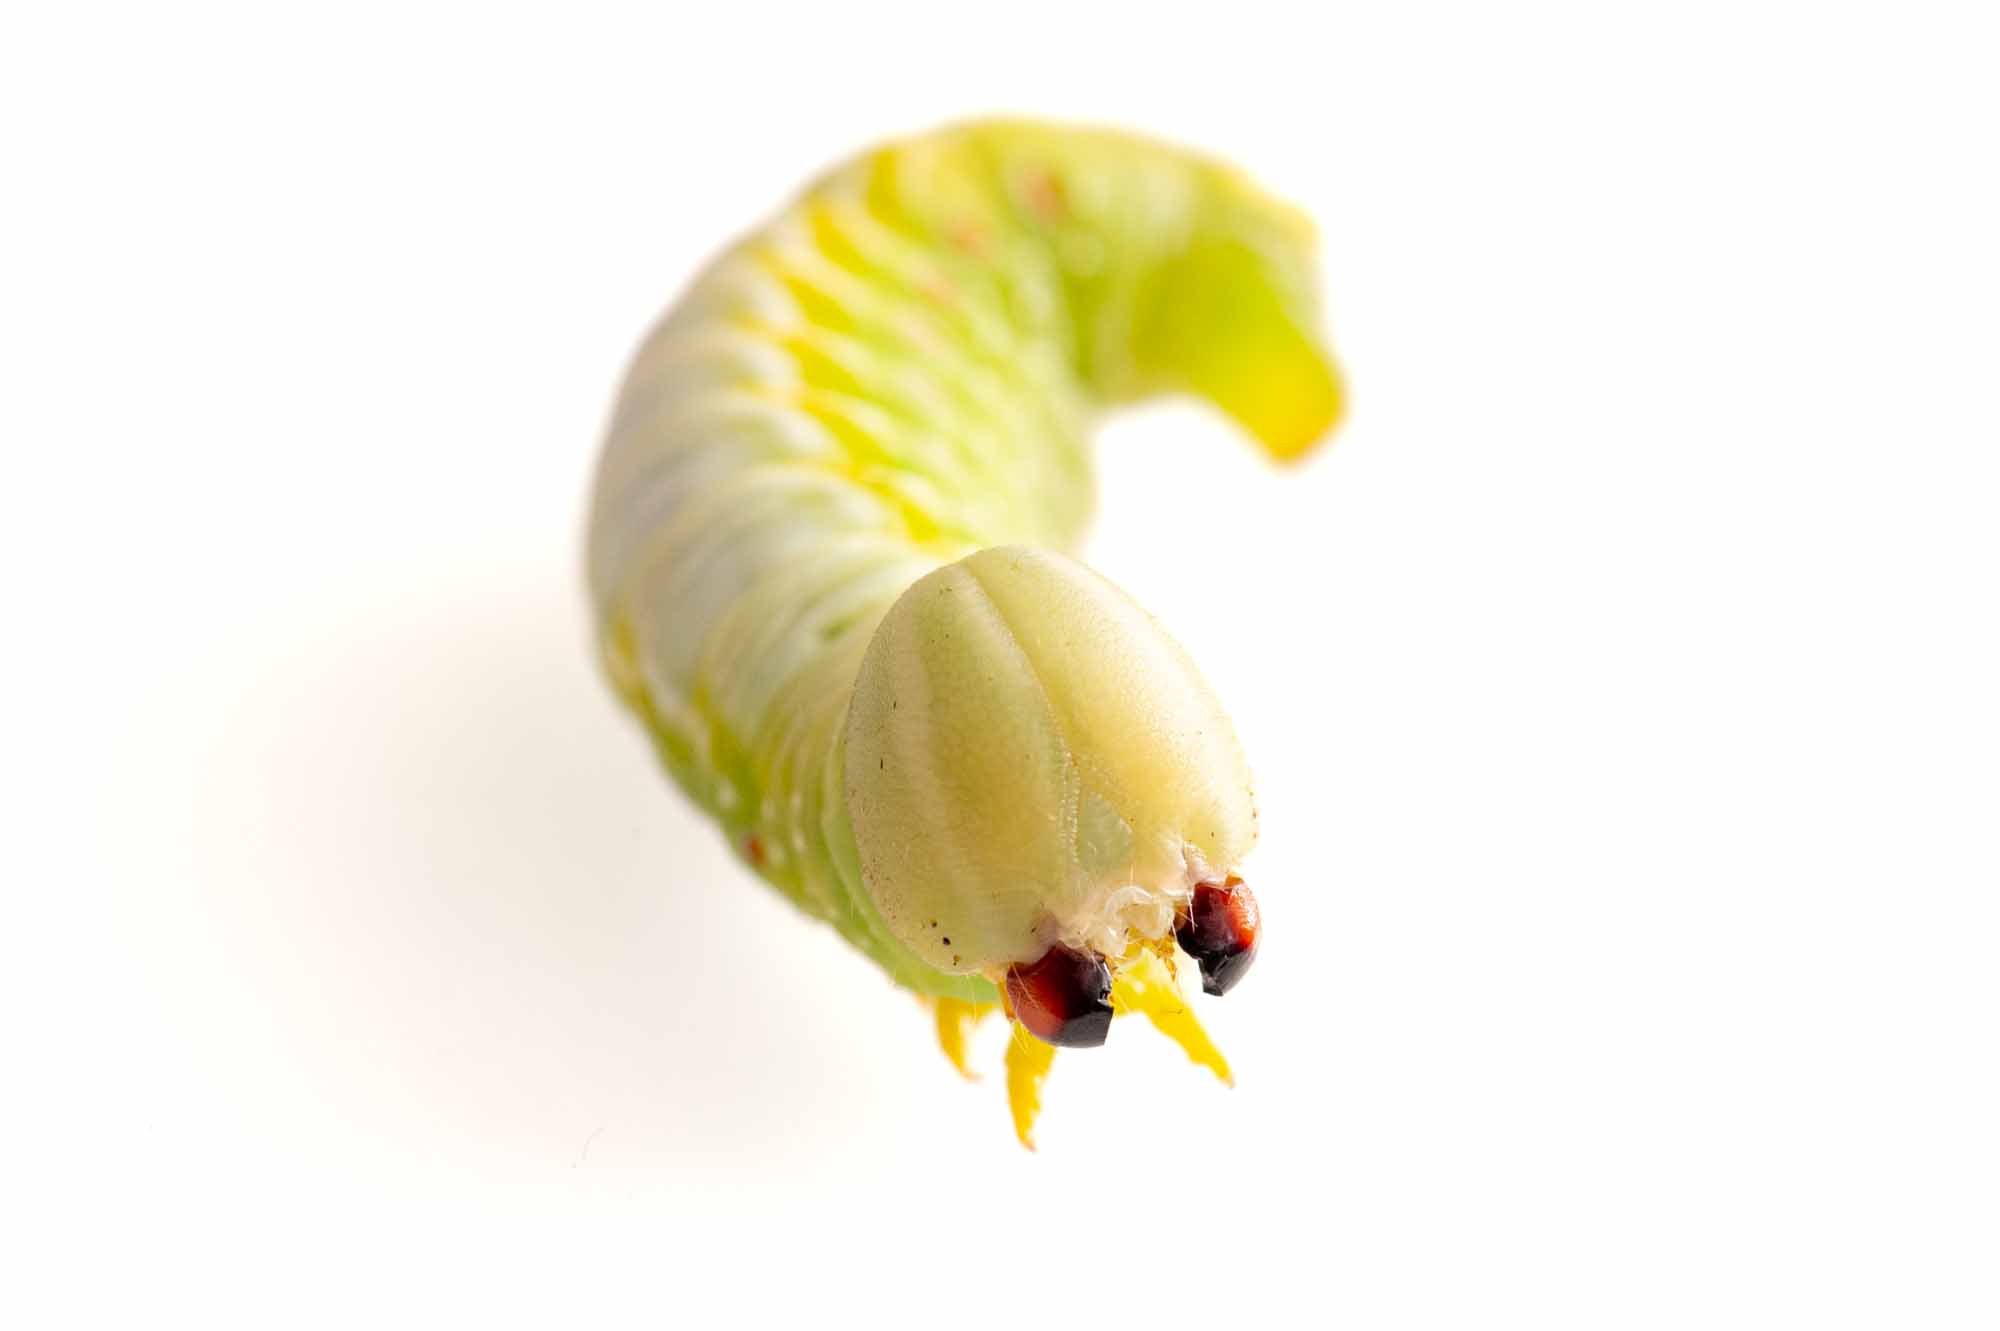 セダカシャチホコの幼虫の画像